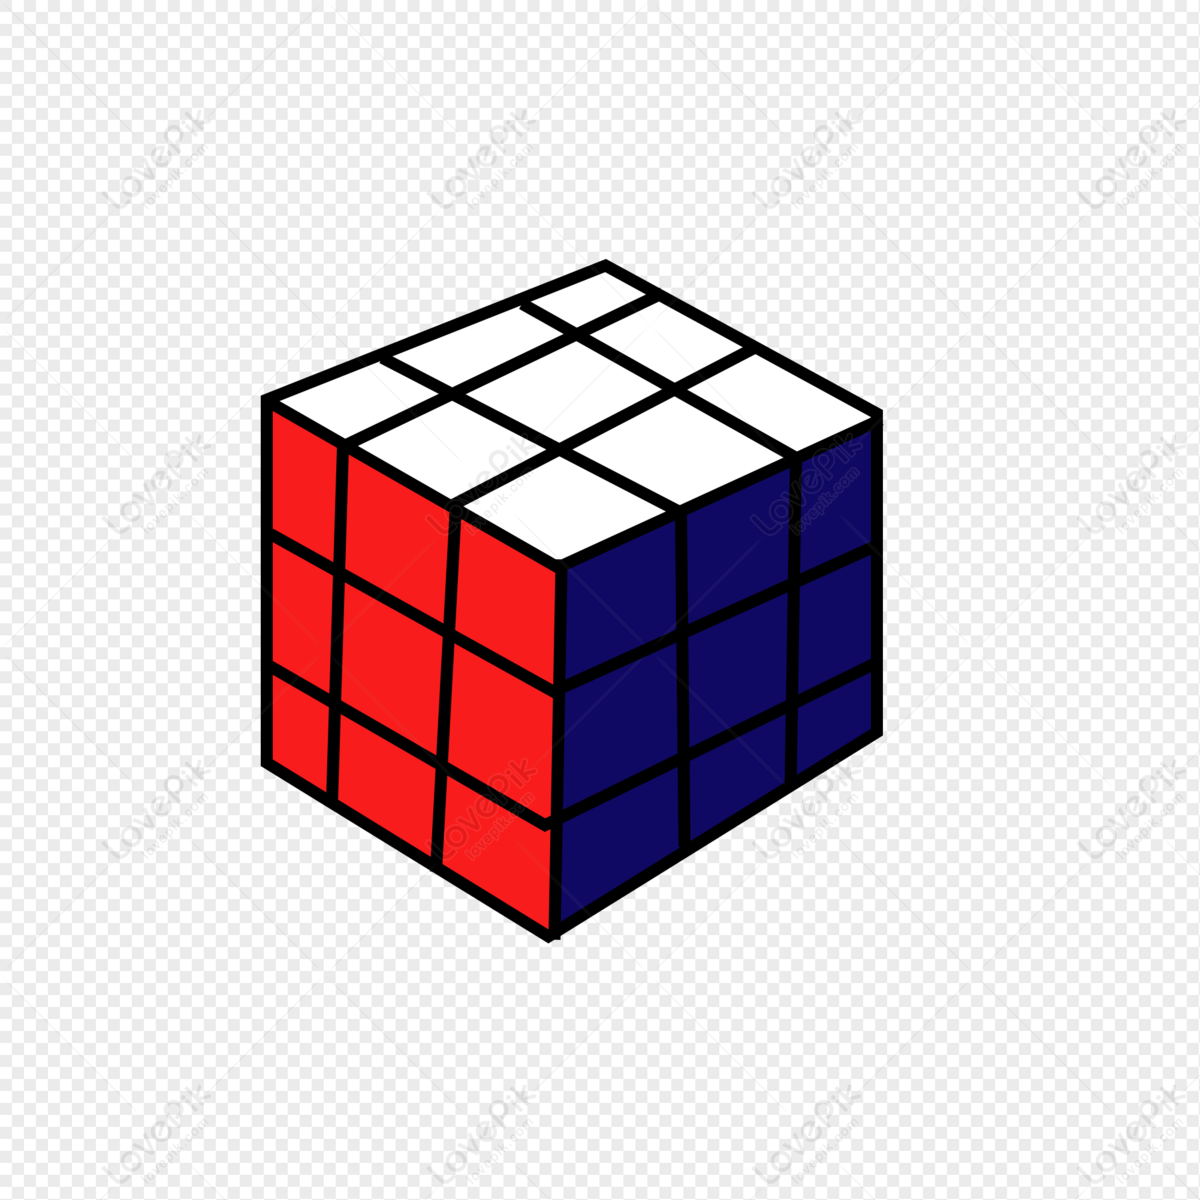 Hình ảnh Khối Rubik PNG Miễn Phí Tải Về - Lovepik